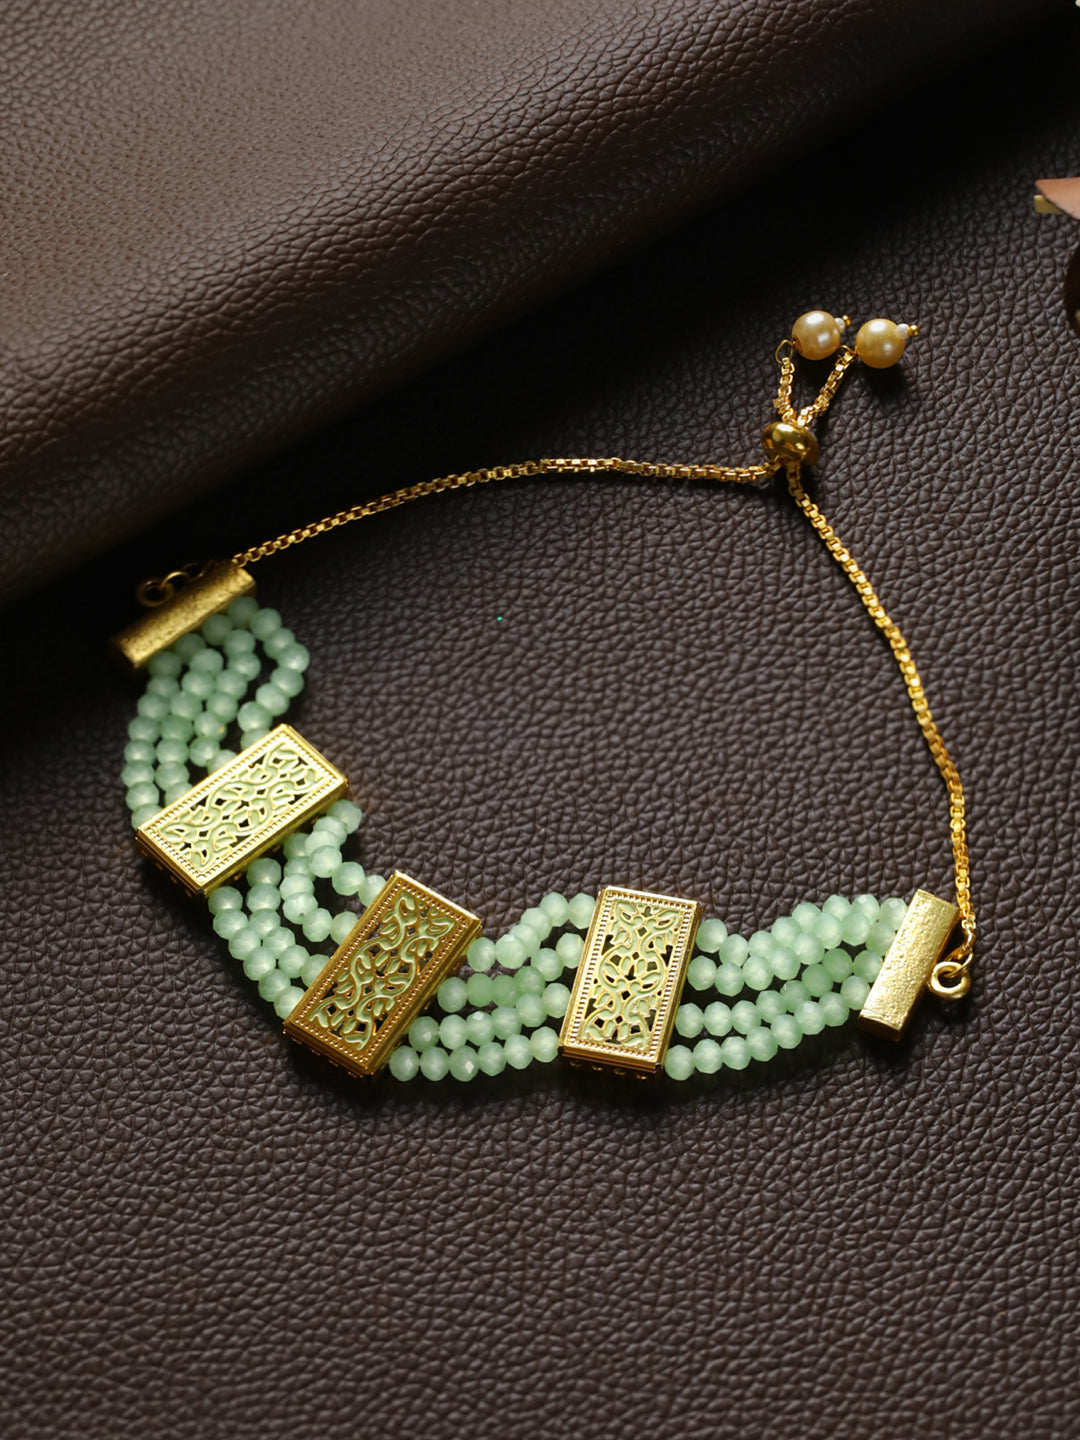 Priyaasi Green Leaf Meenakari Multilayer Gold-Plated Bracelet